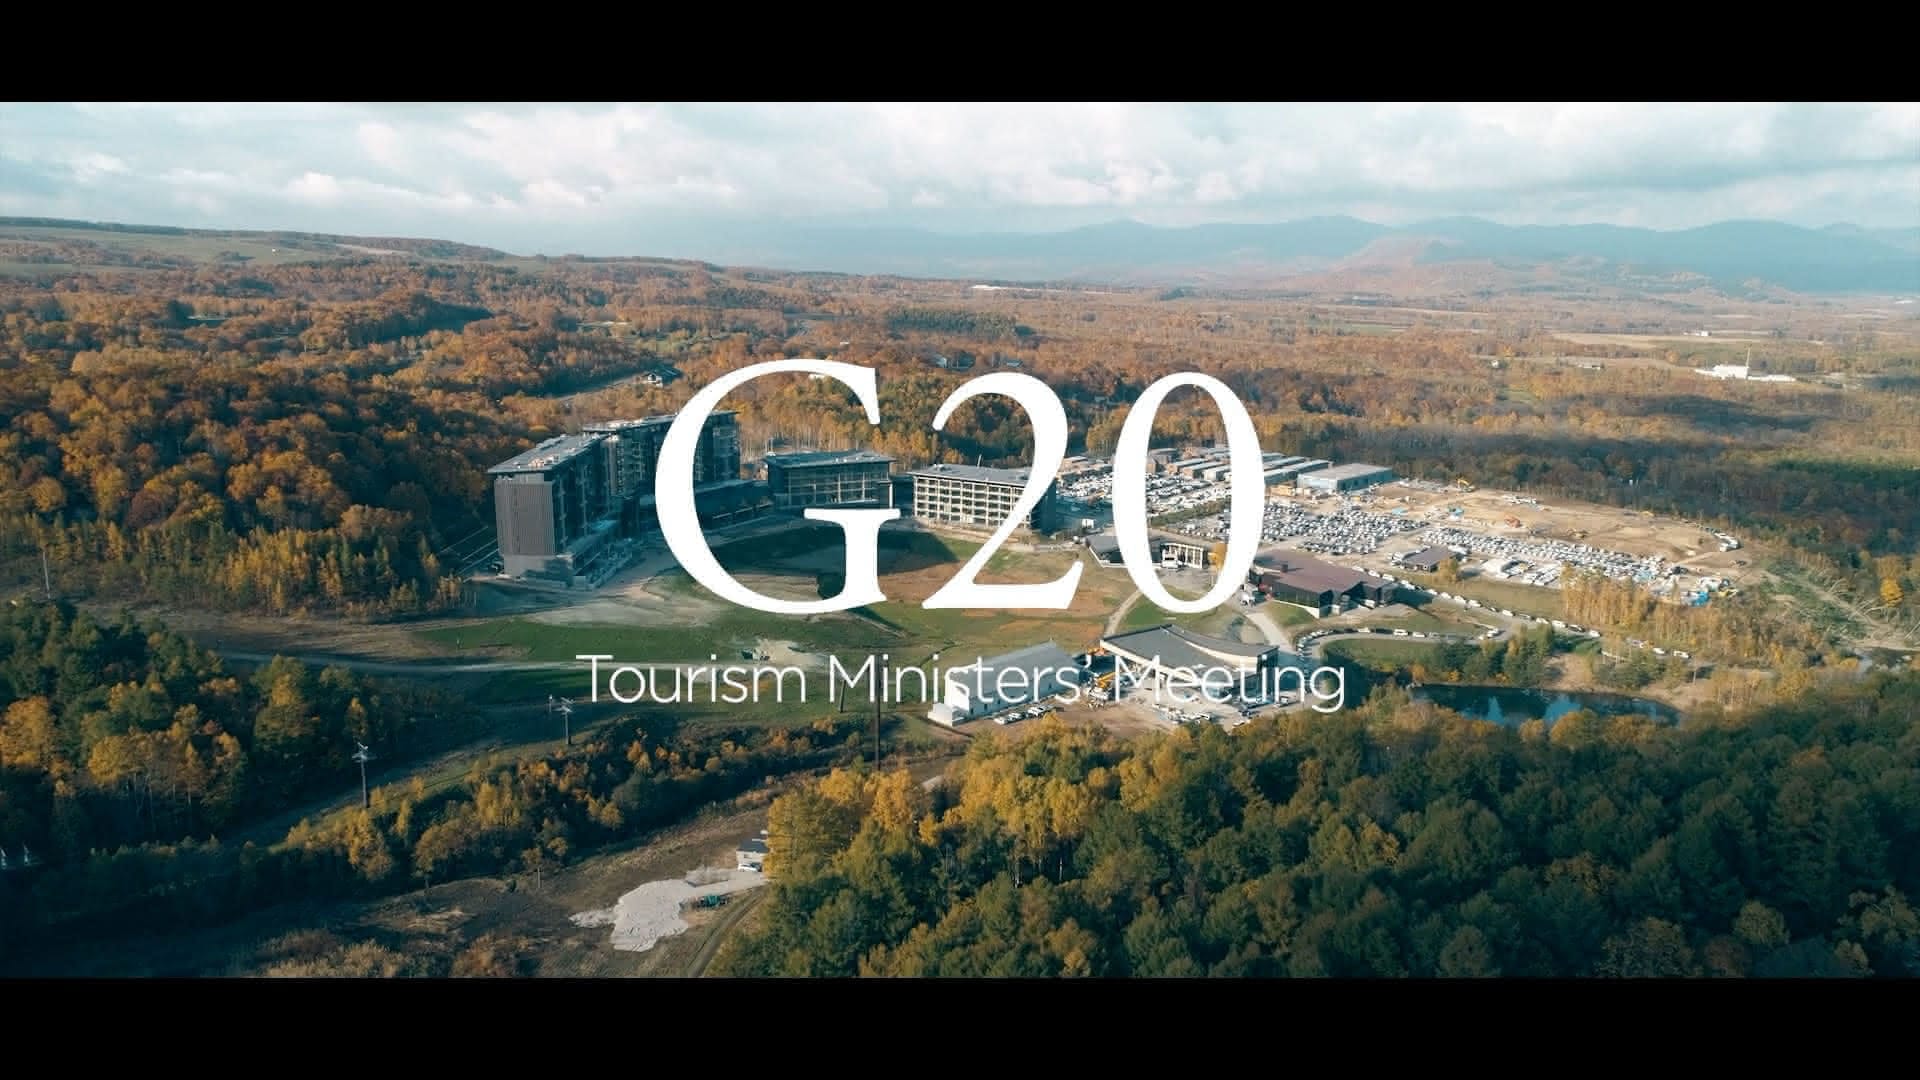 G20